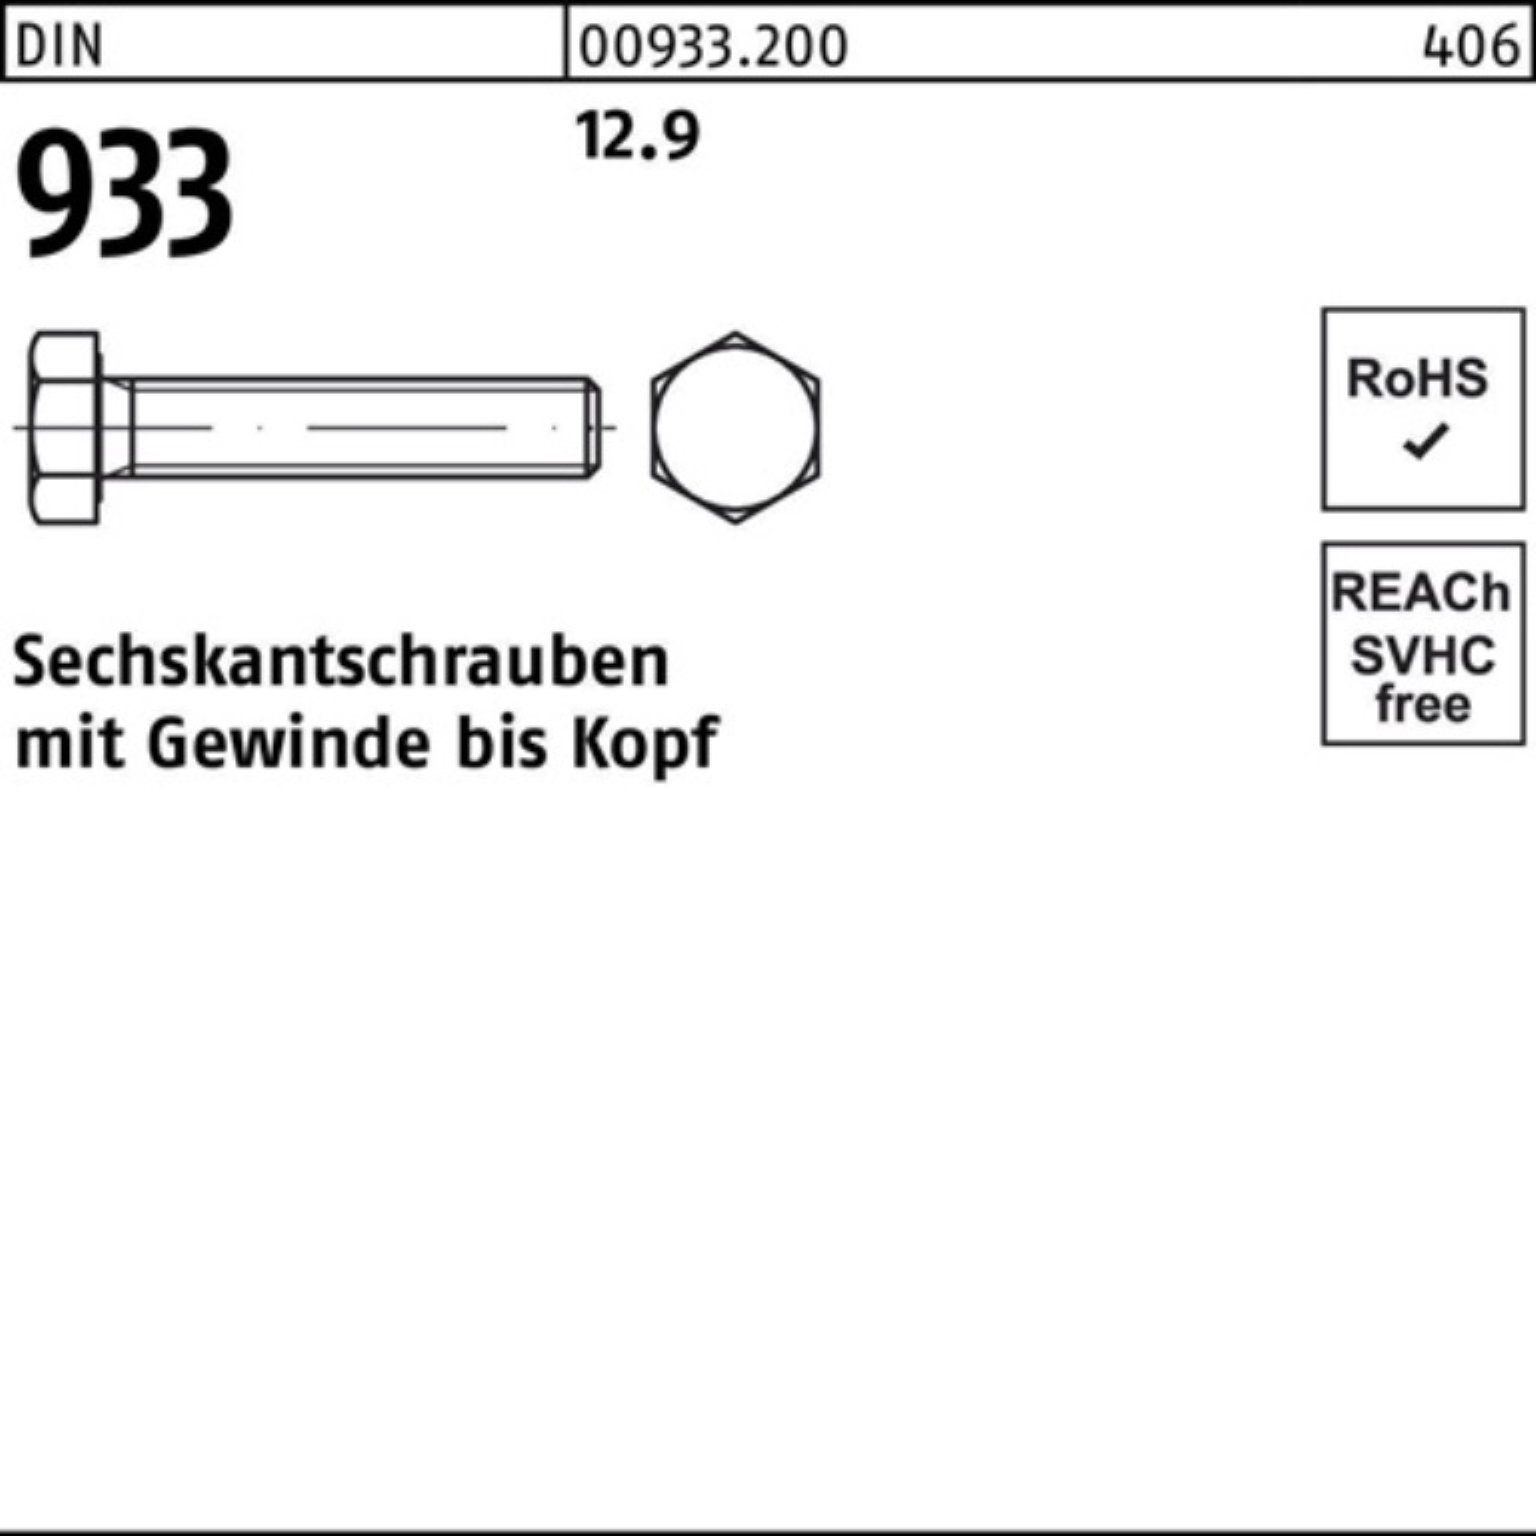 12 DIN Sechskantschraube 933 Sechskantschraube DIN M6x 12.9 500 500er Pack Stück Reyher 933 VG